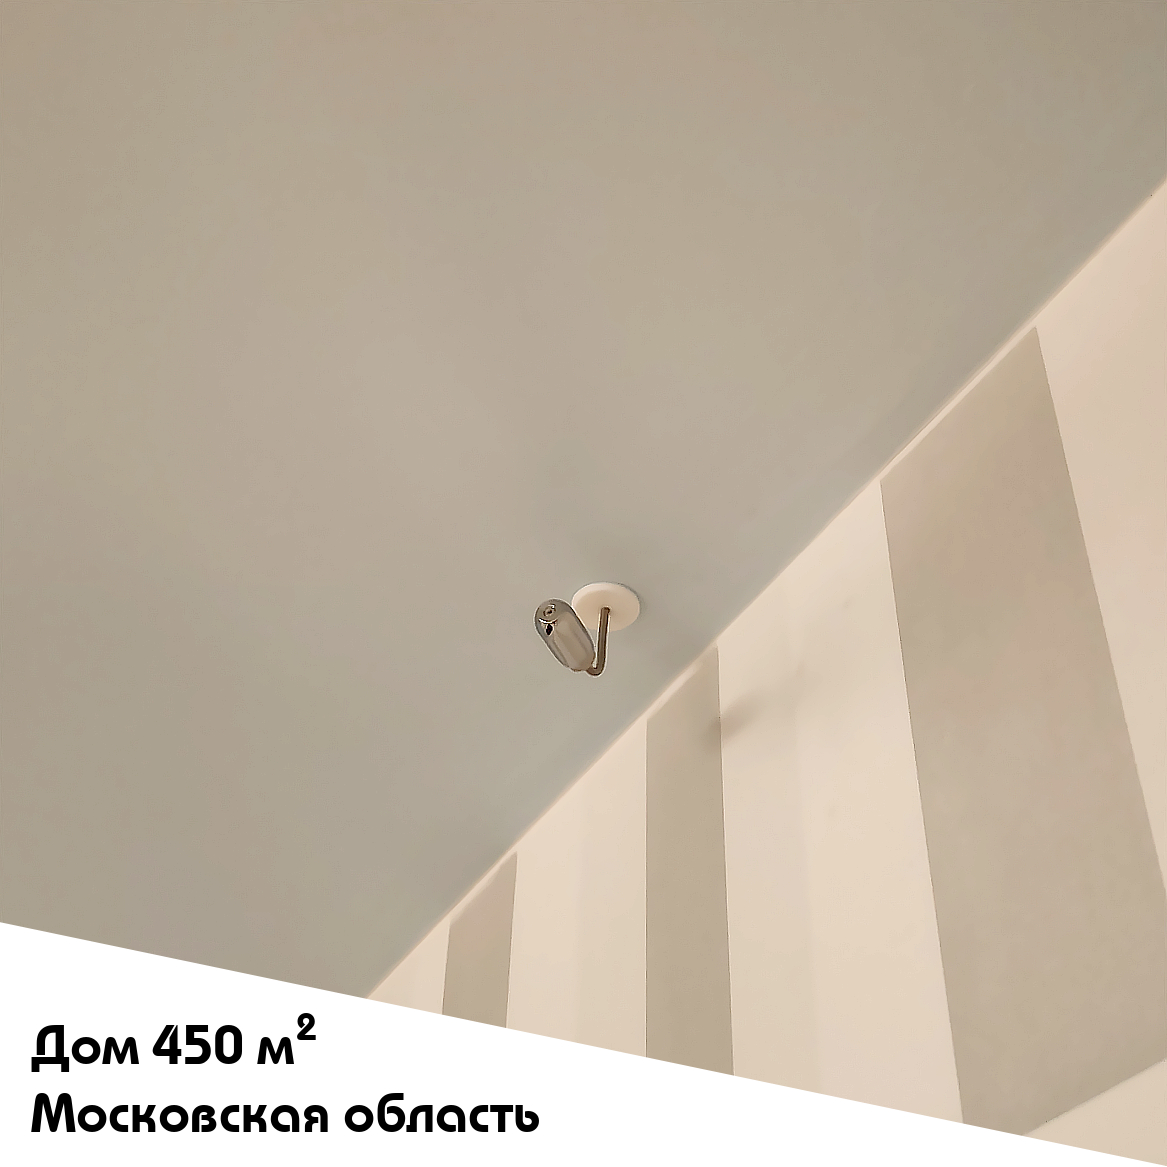 Выполненный объект. Система увлажнения для частного дома 450 м2 в Московской области